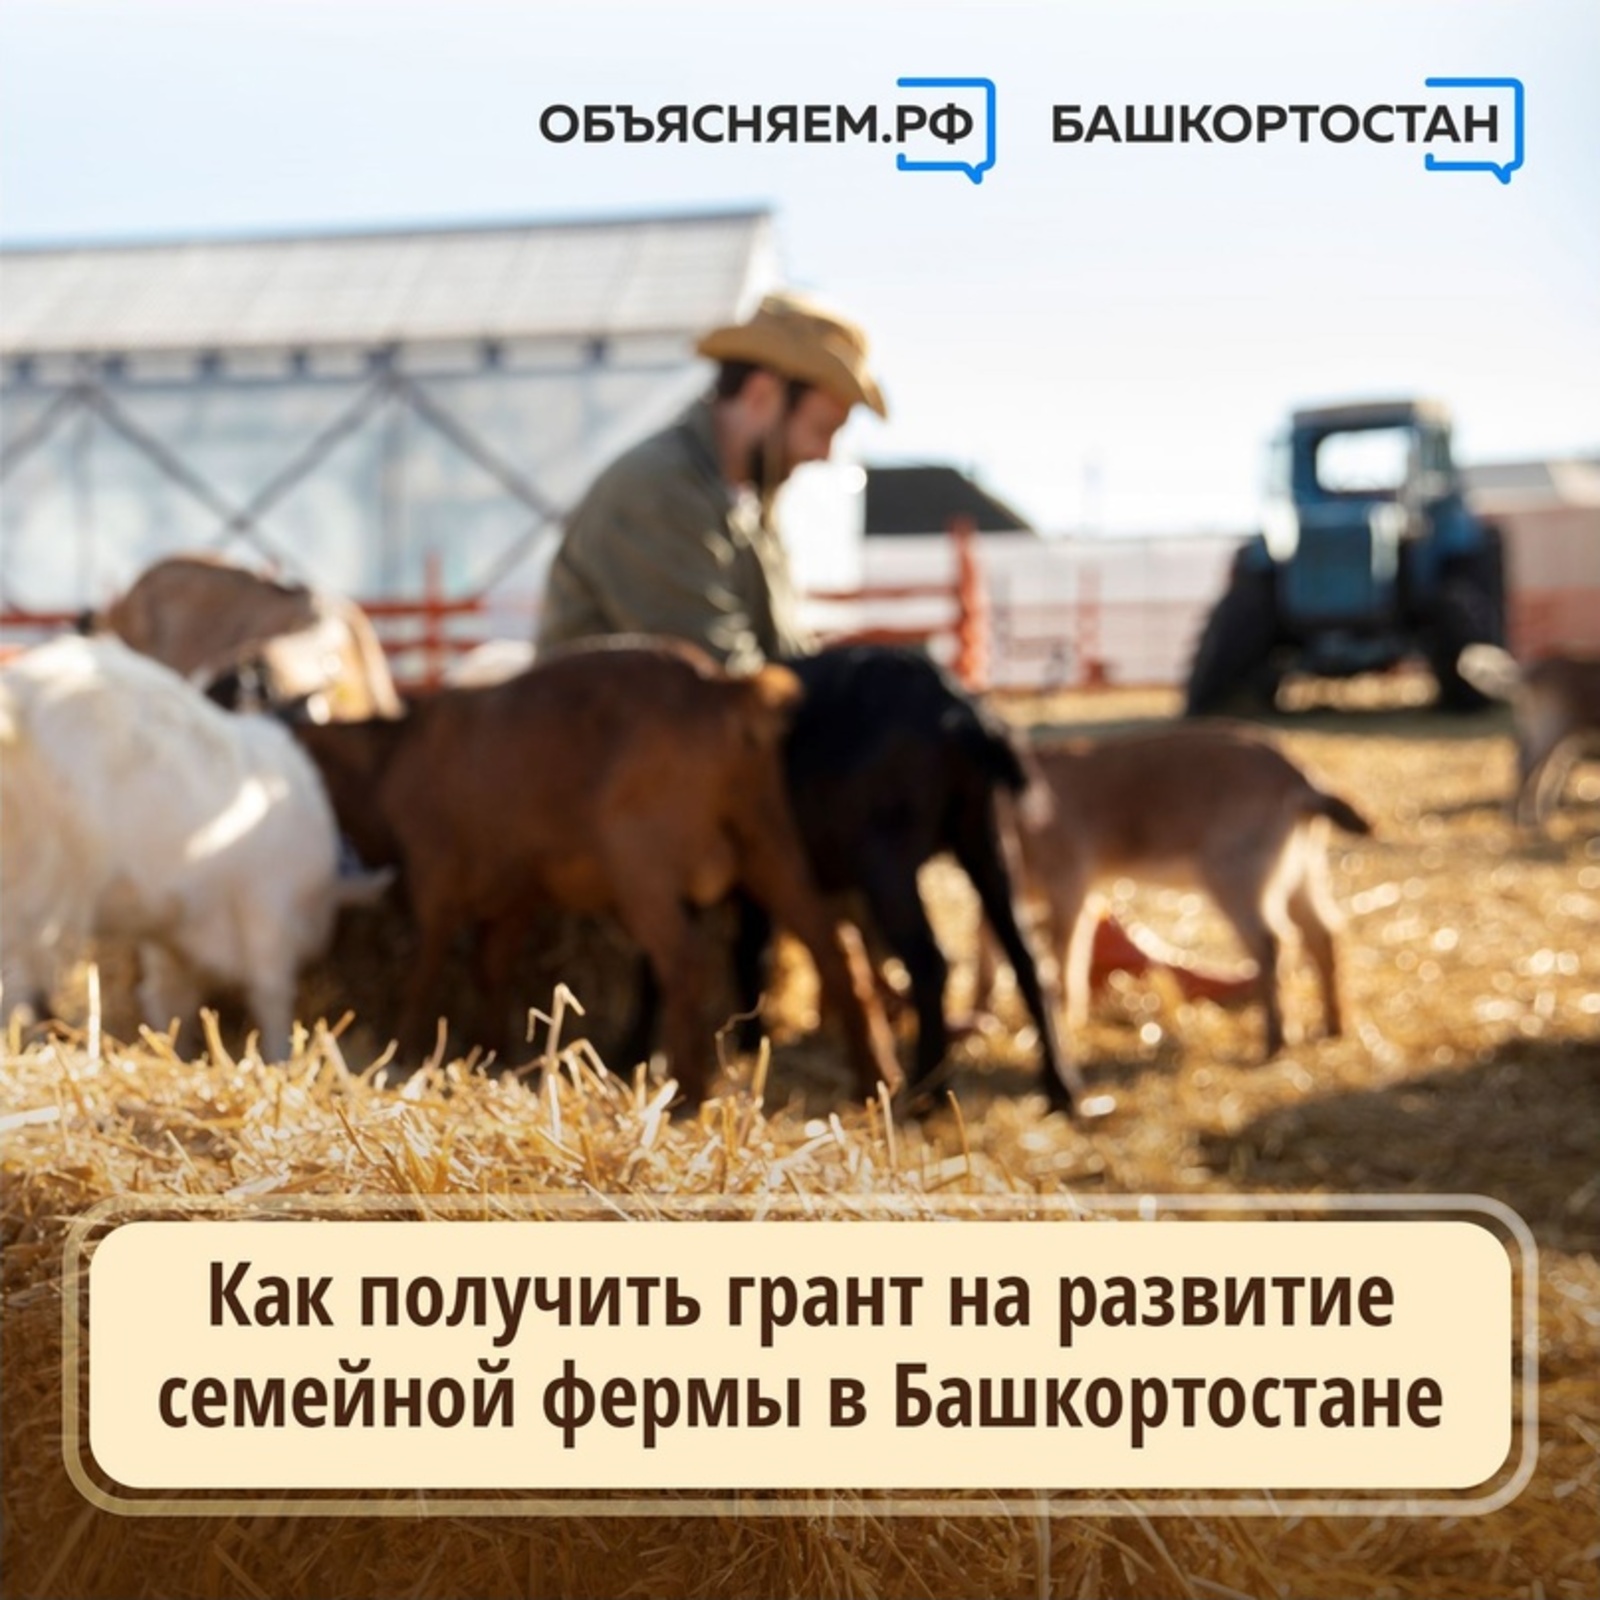 Как получить грант на развитие семейной фермы в Башкортостане?